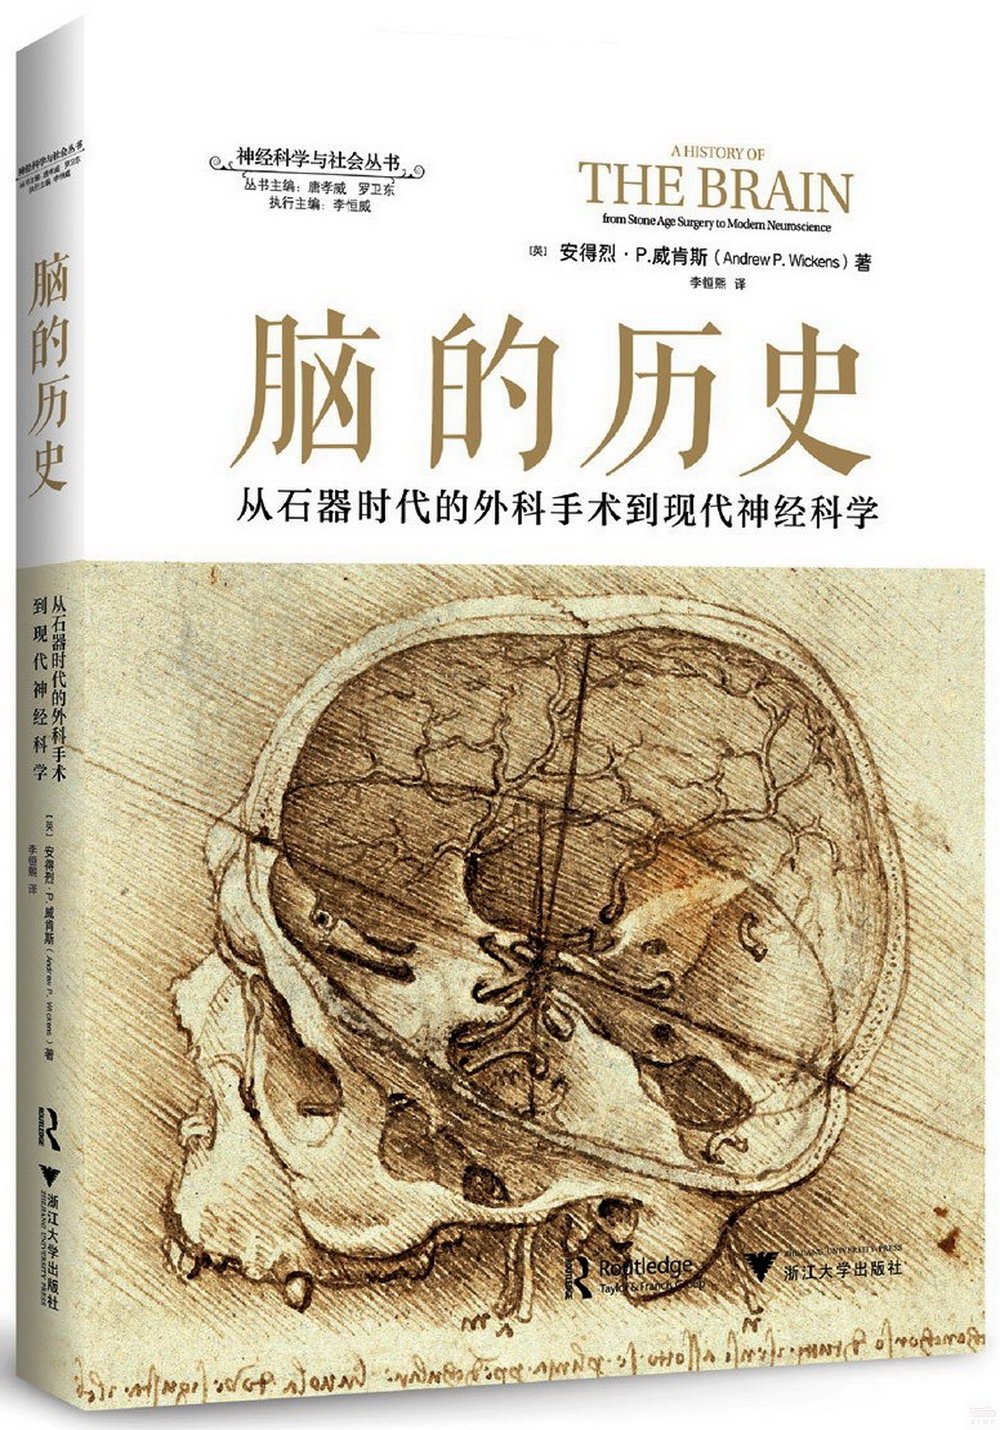 腦的歷史：從石器時代的外科手術到現代神經科學